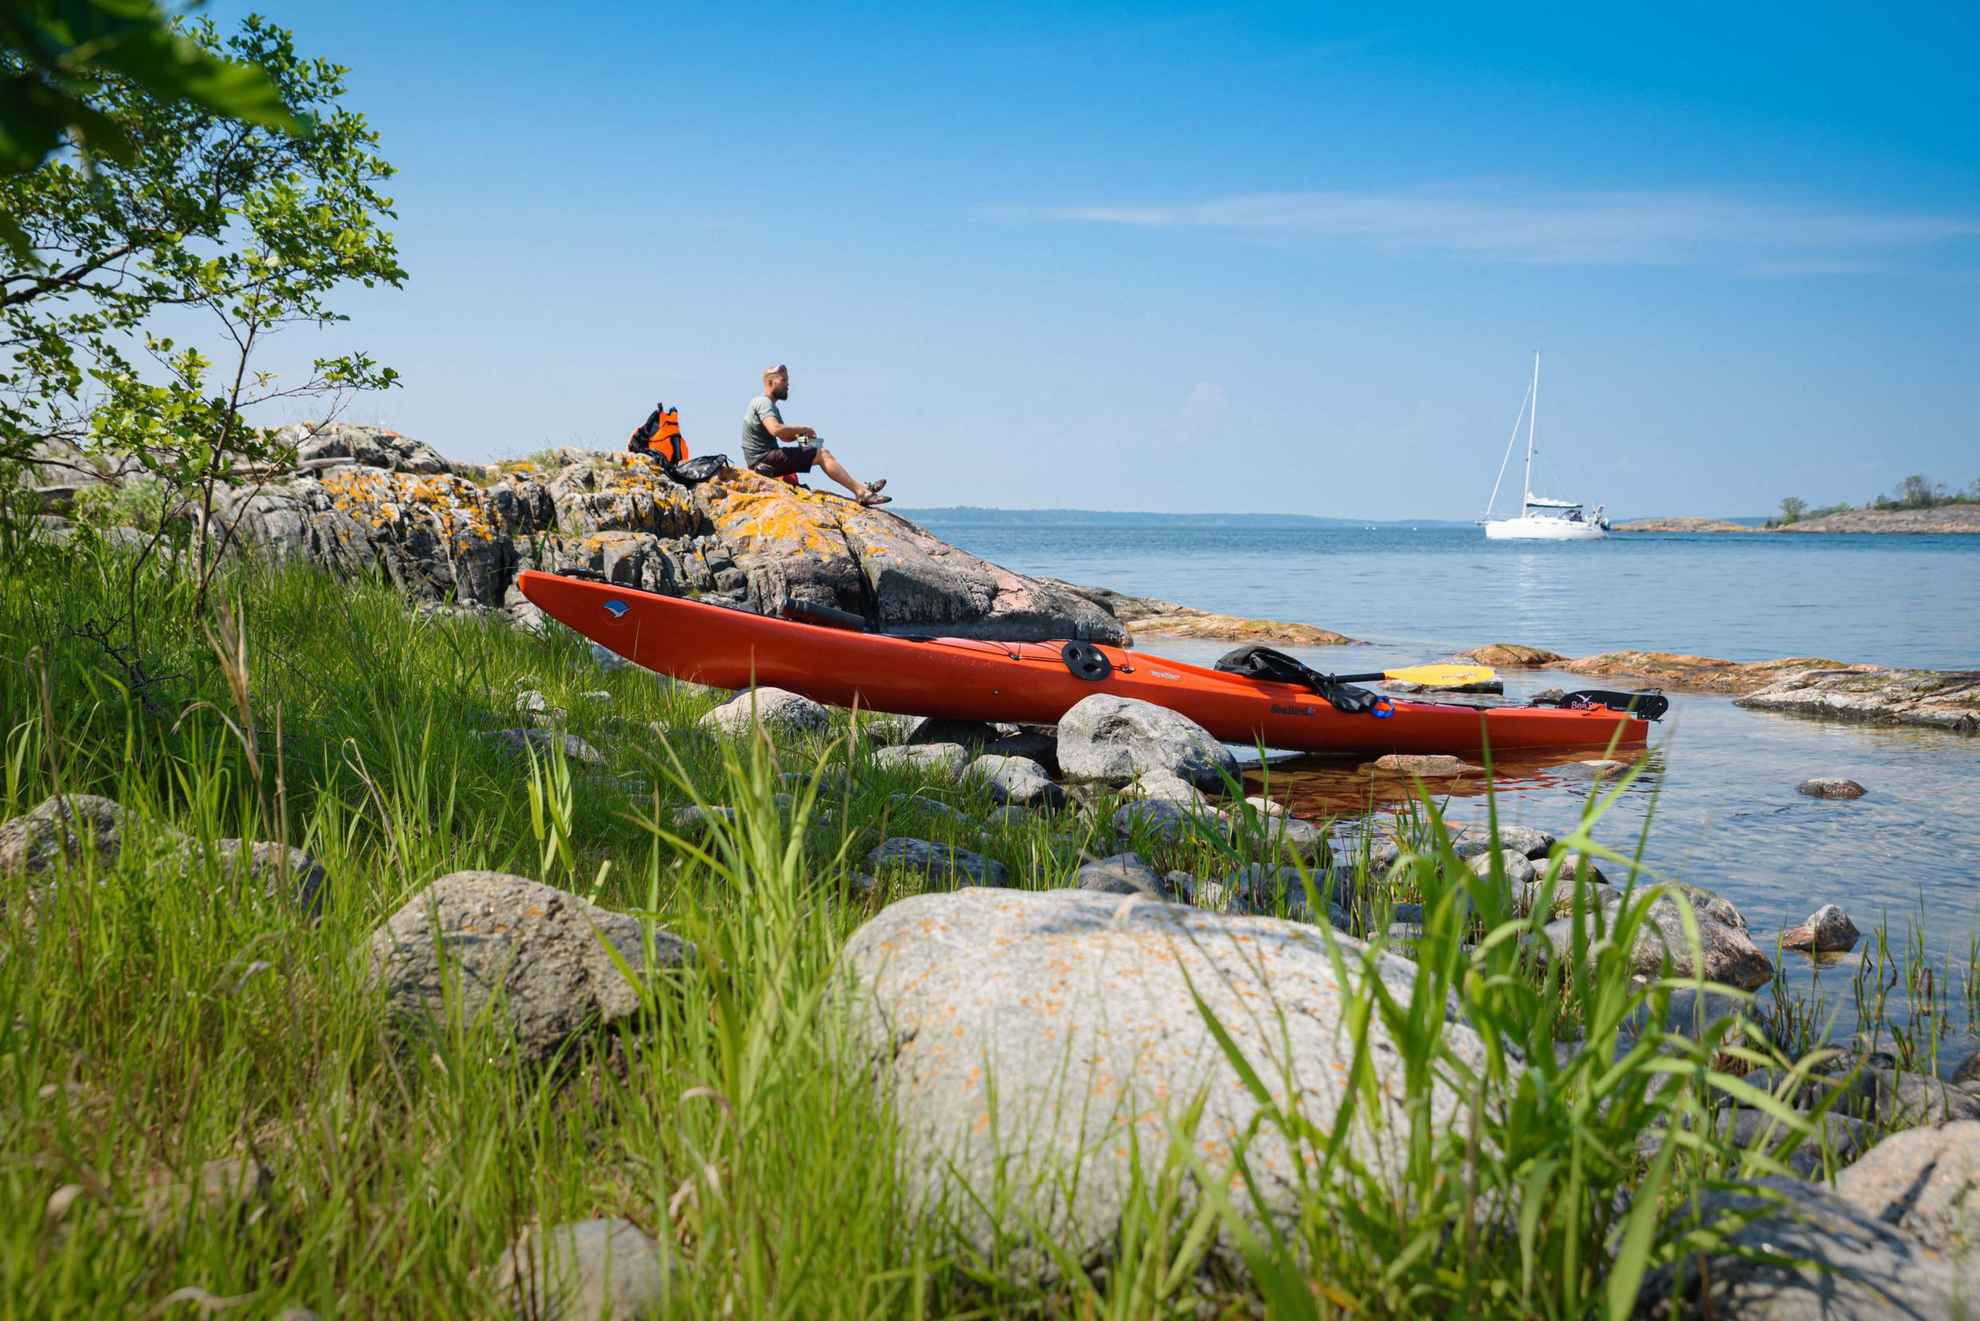 Een oranje kajak ligt aan de kant van het water terwijl een man geniet van een lunch op de kliffen. Op de achtergrond ligt een witte zeilboot.